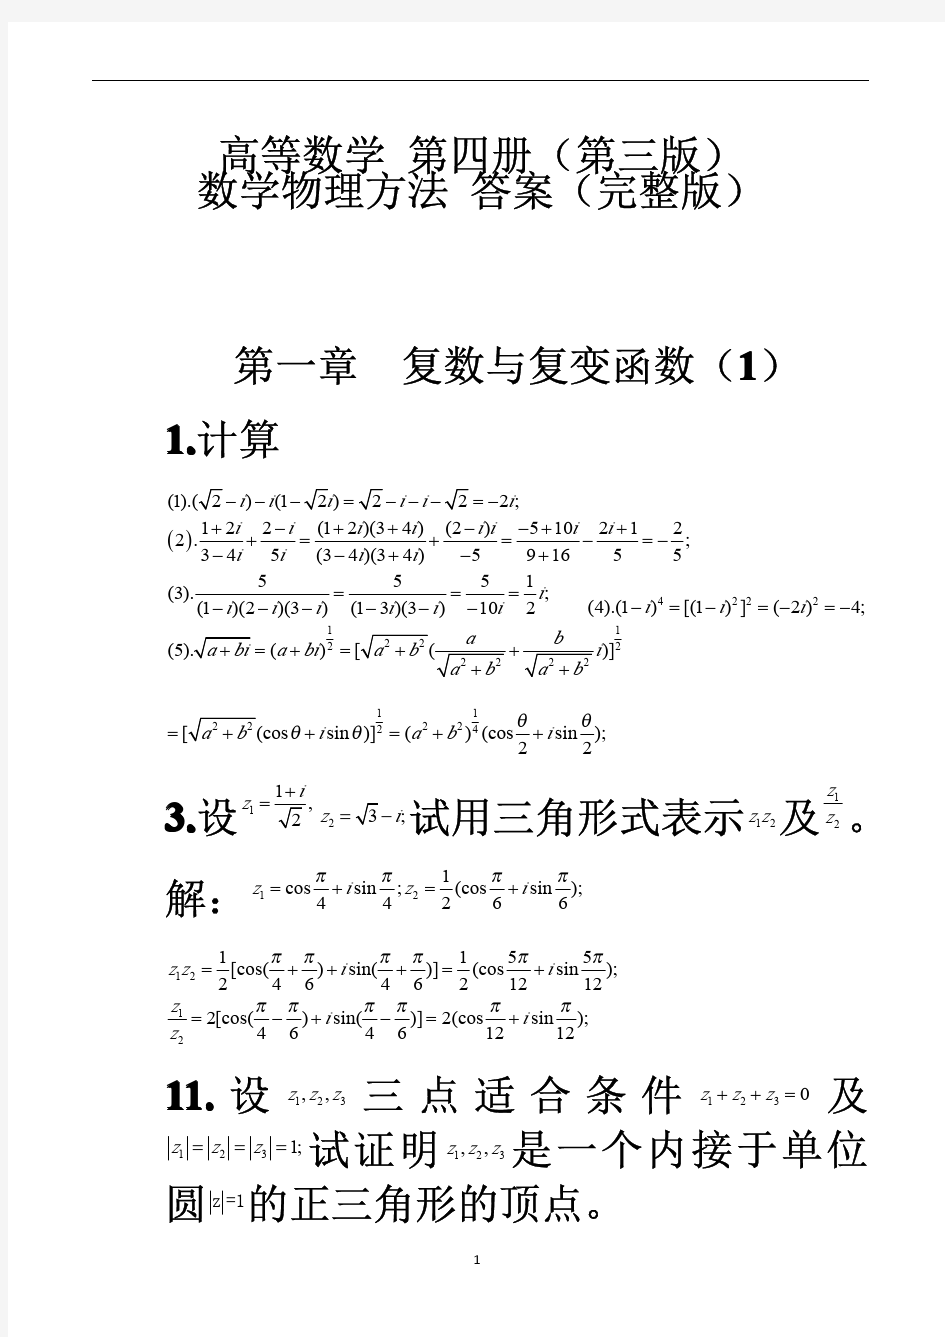 高等数学第四册第三版数学物理方法答案(完整版)